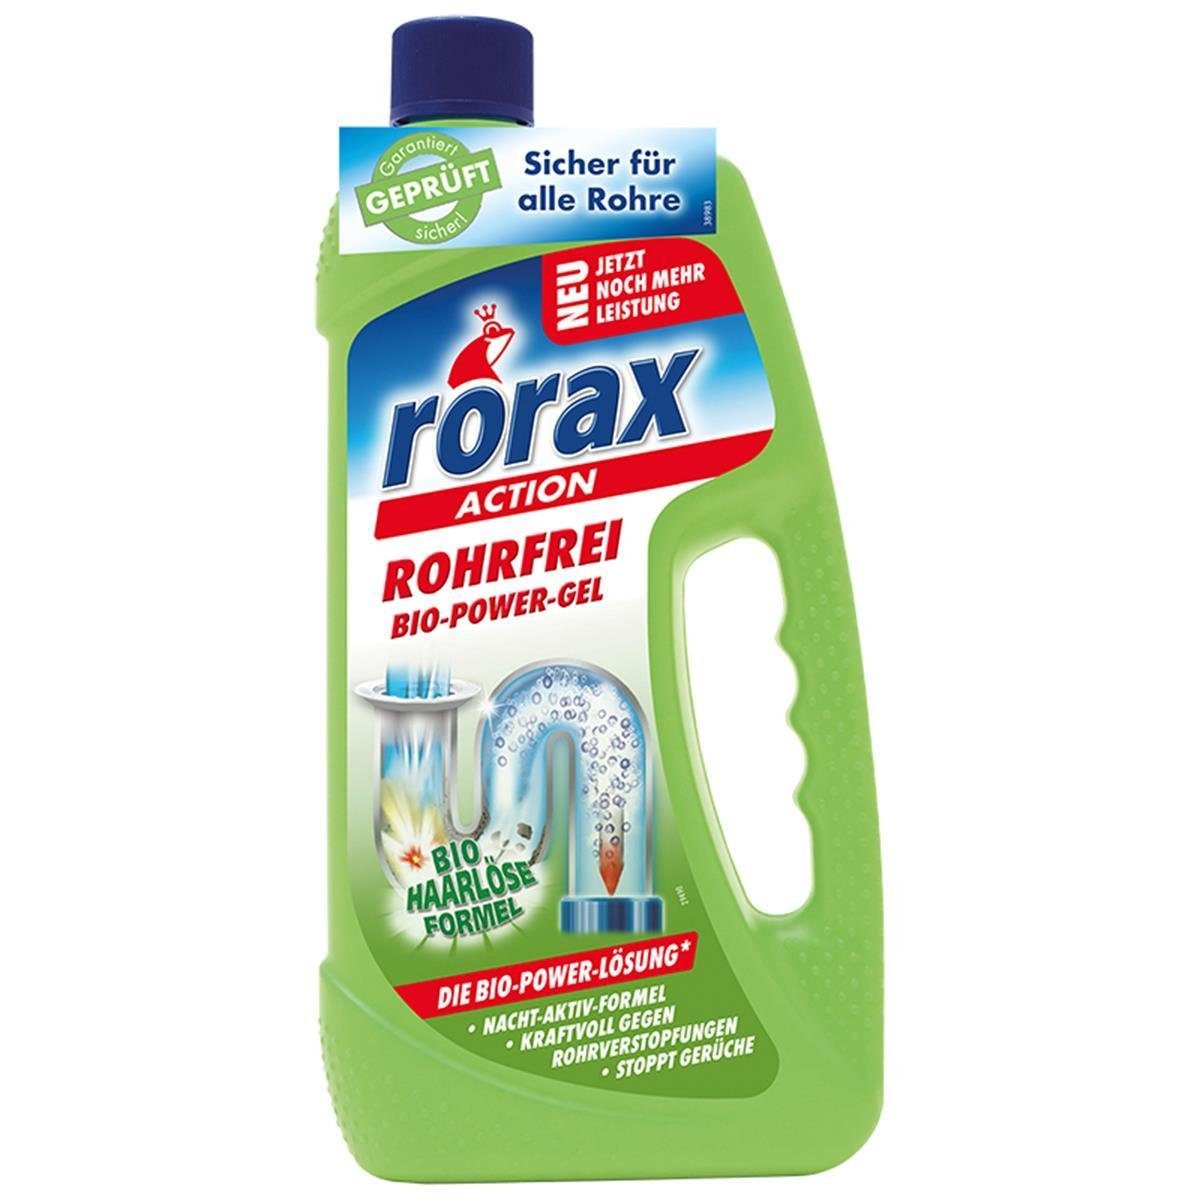 rorax 2x rorax Rohrfrei Bio-Power-Gel 1 selbst Haare Liter Rohrreiniger auf - Löst